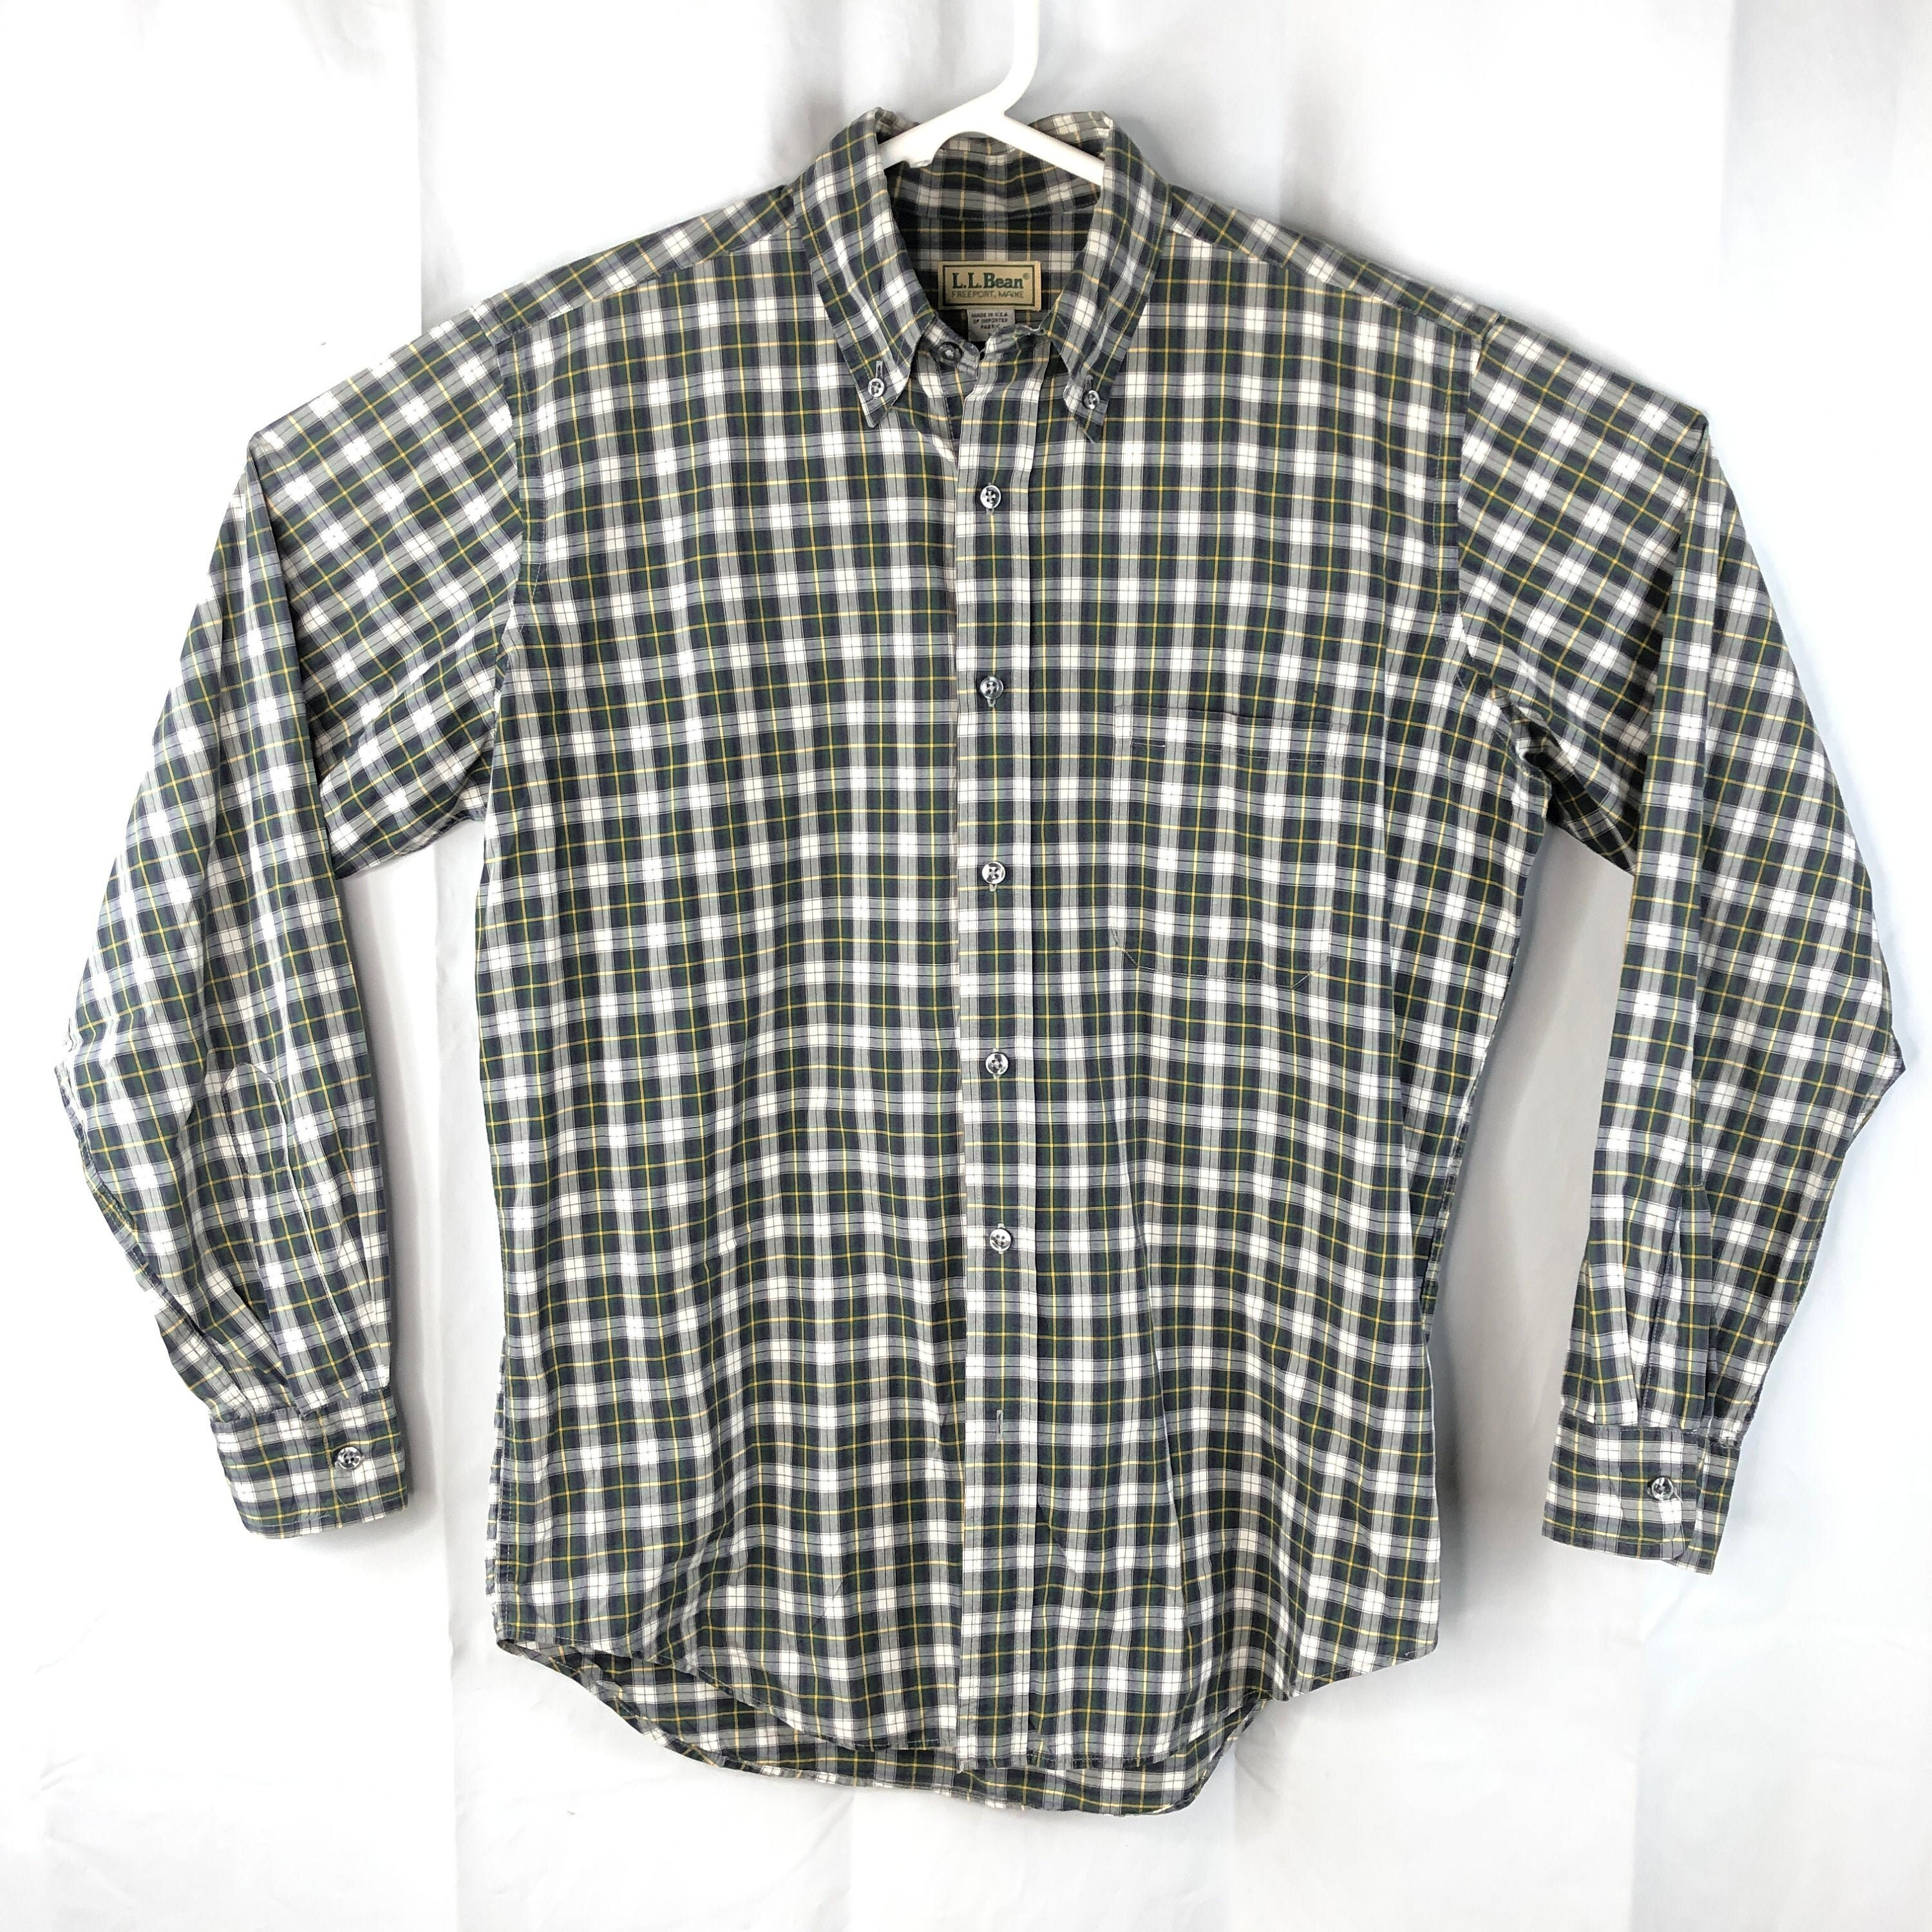 Willis & Geiger Button Down Flannel Shirt Mens Size Large L Plaid ...